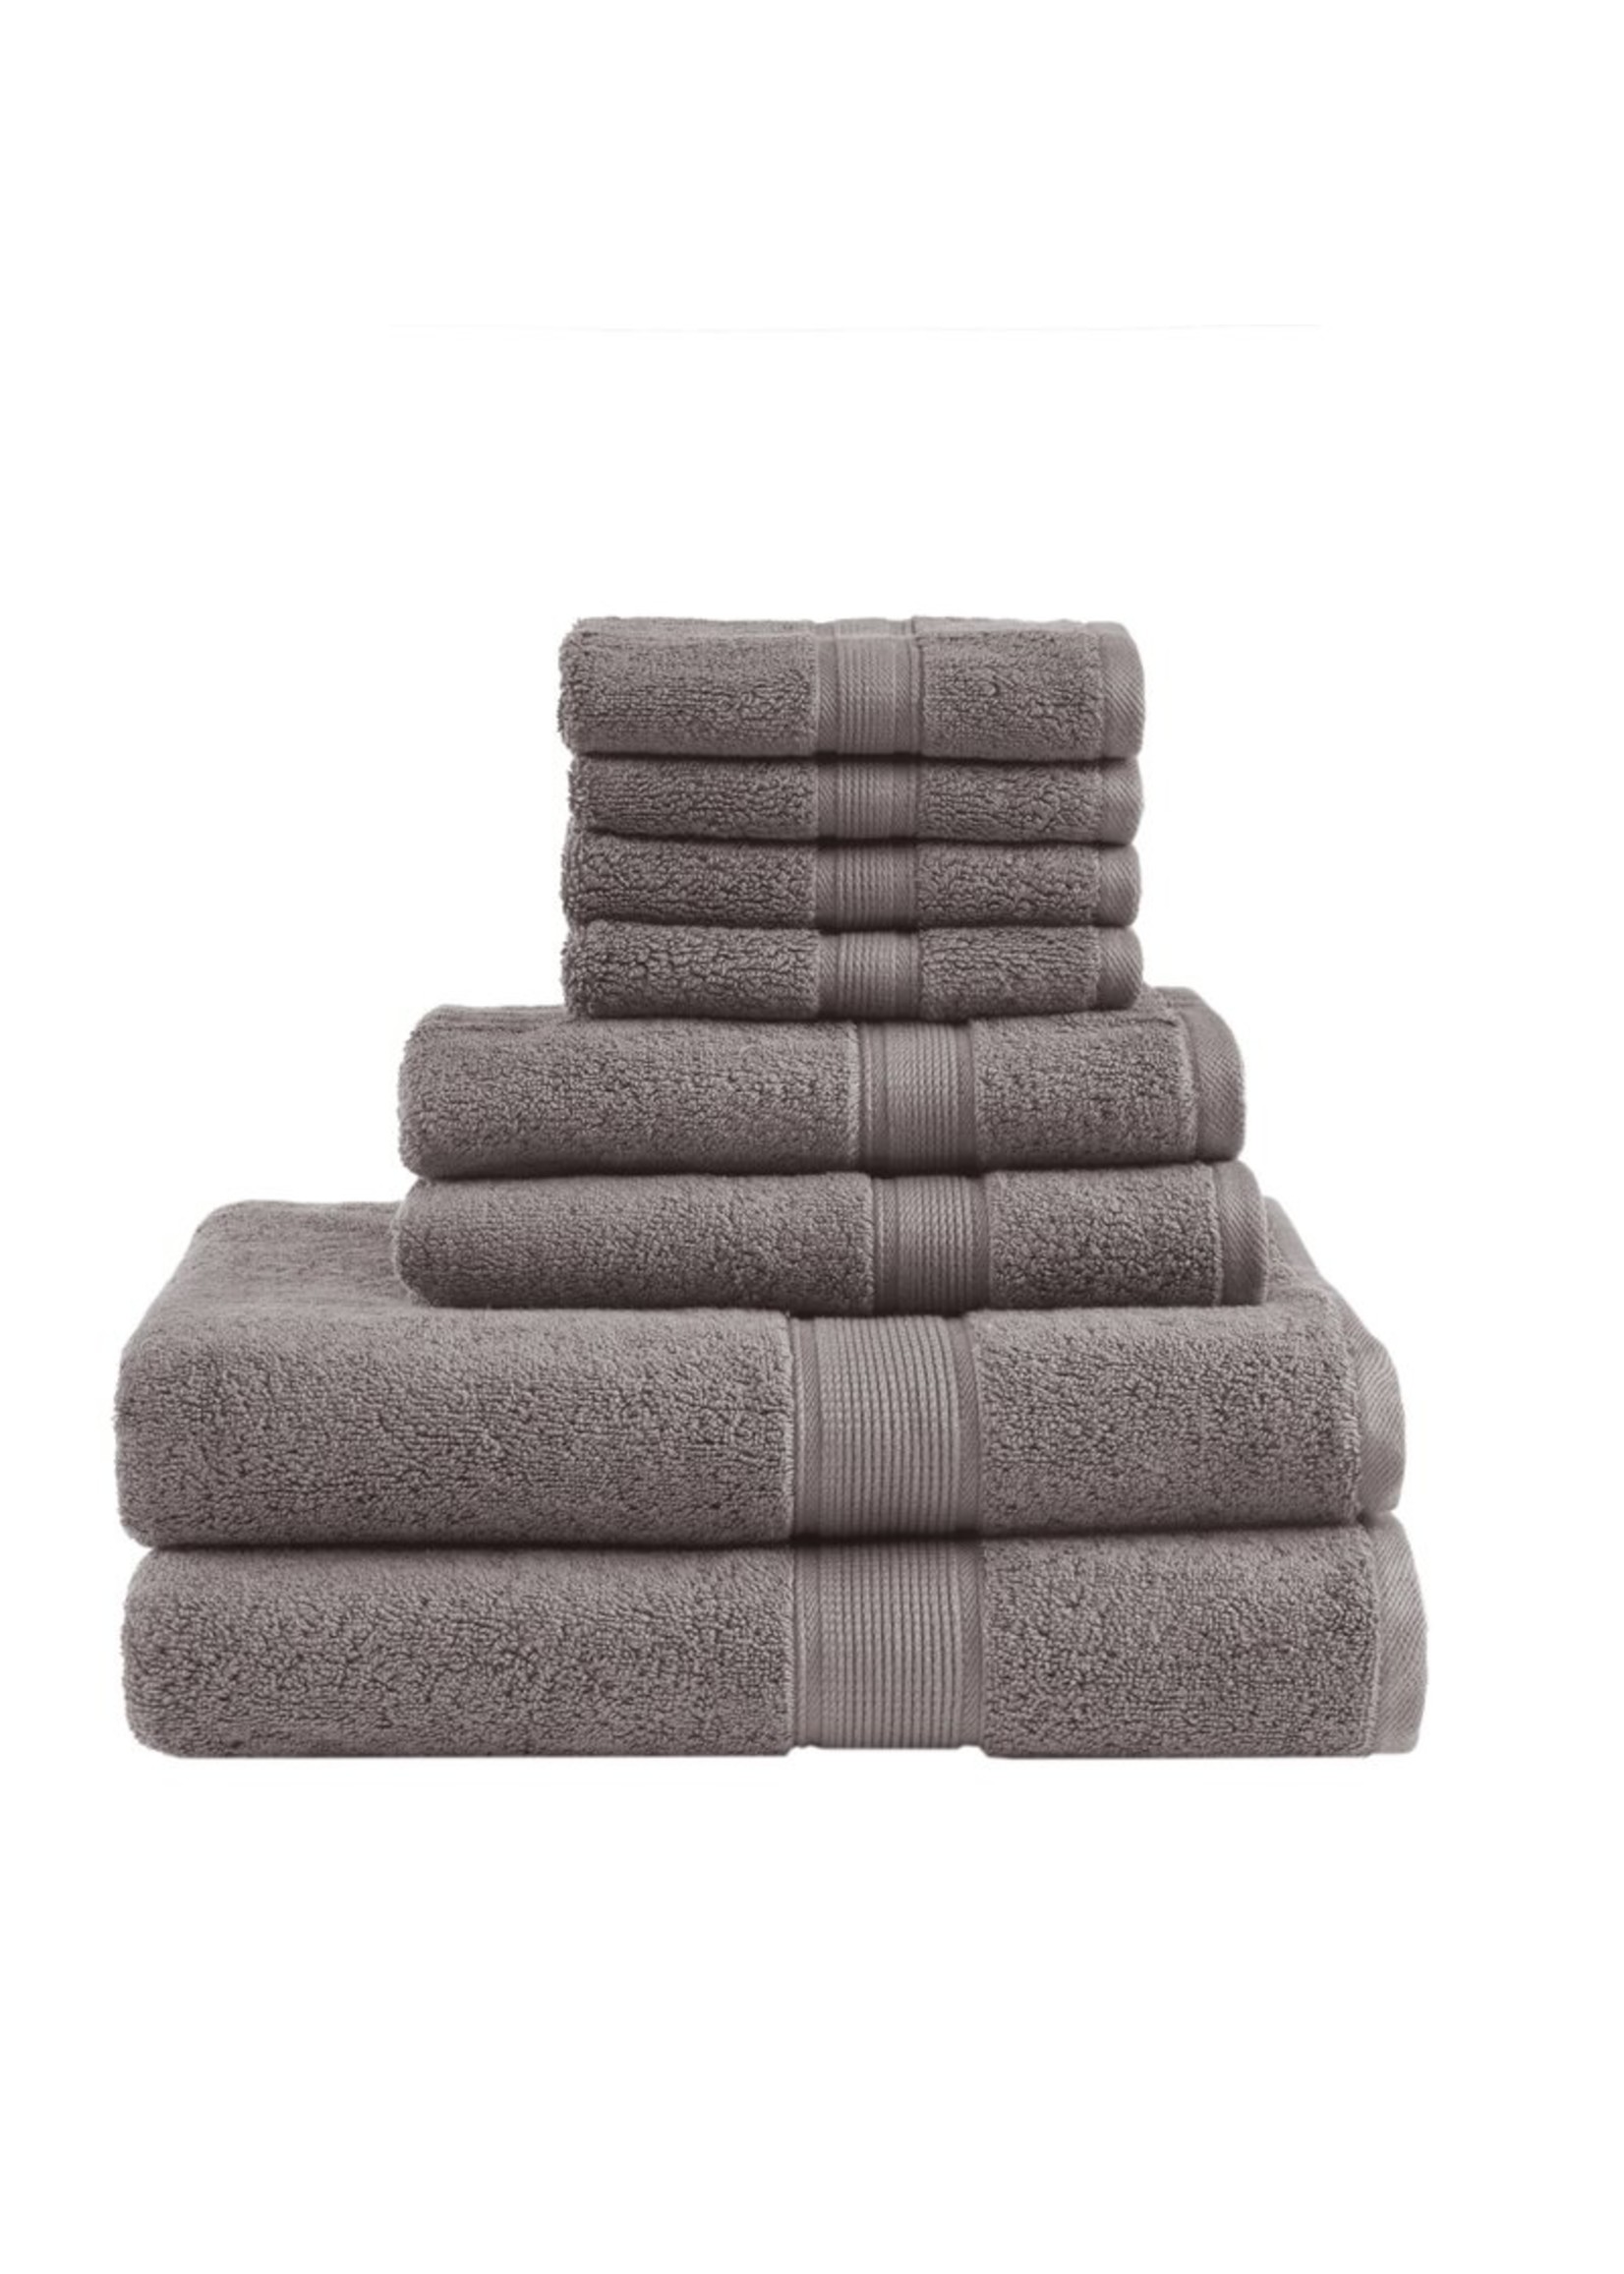 *8 Piece 100% Cotton Towel Set - Mocha - Final Sale